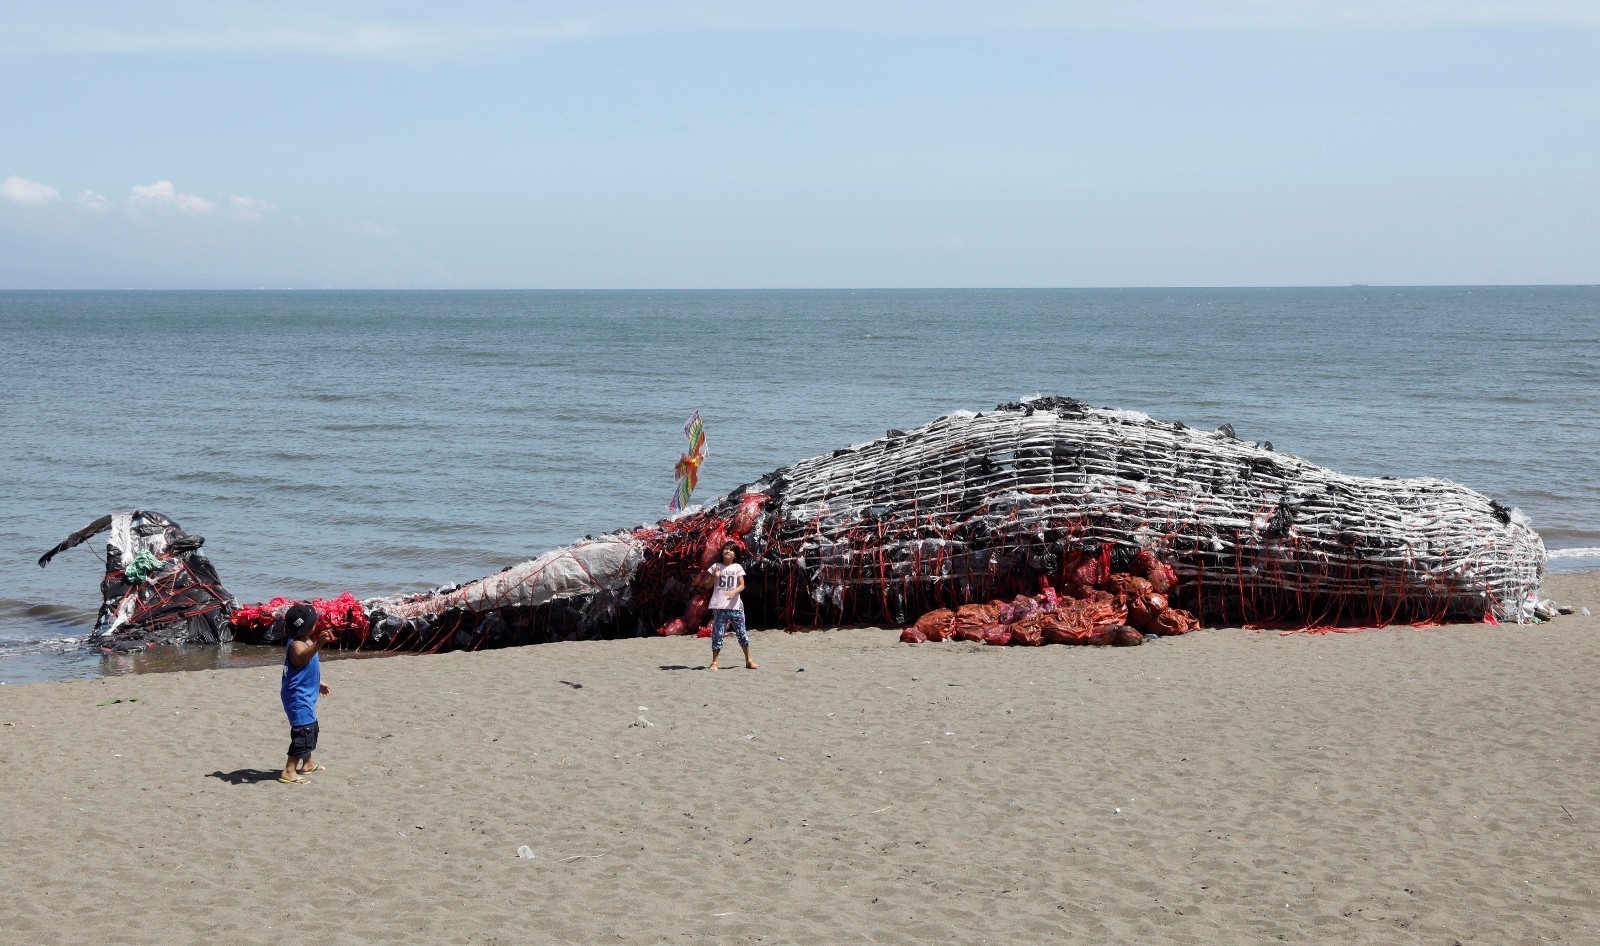 30吨重鲸鱼尸体冲上美国加州海难 游客不顾恶臭围观-新闻中心-南海网